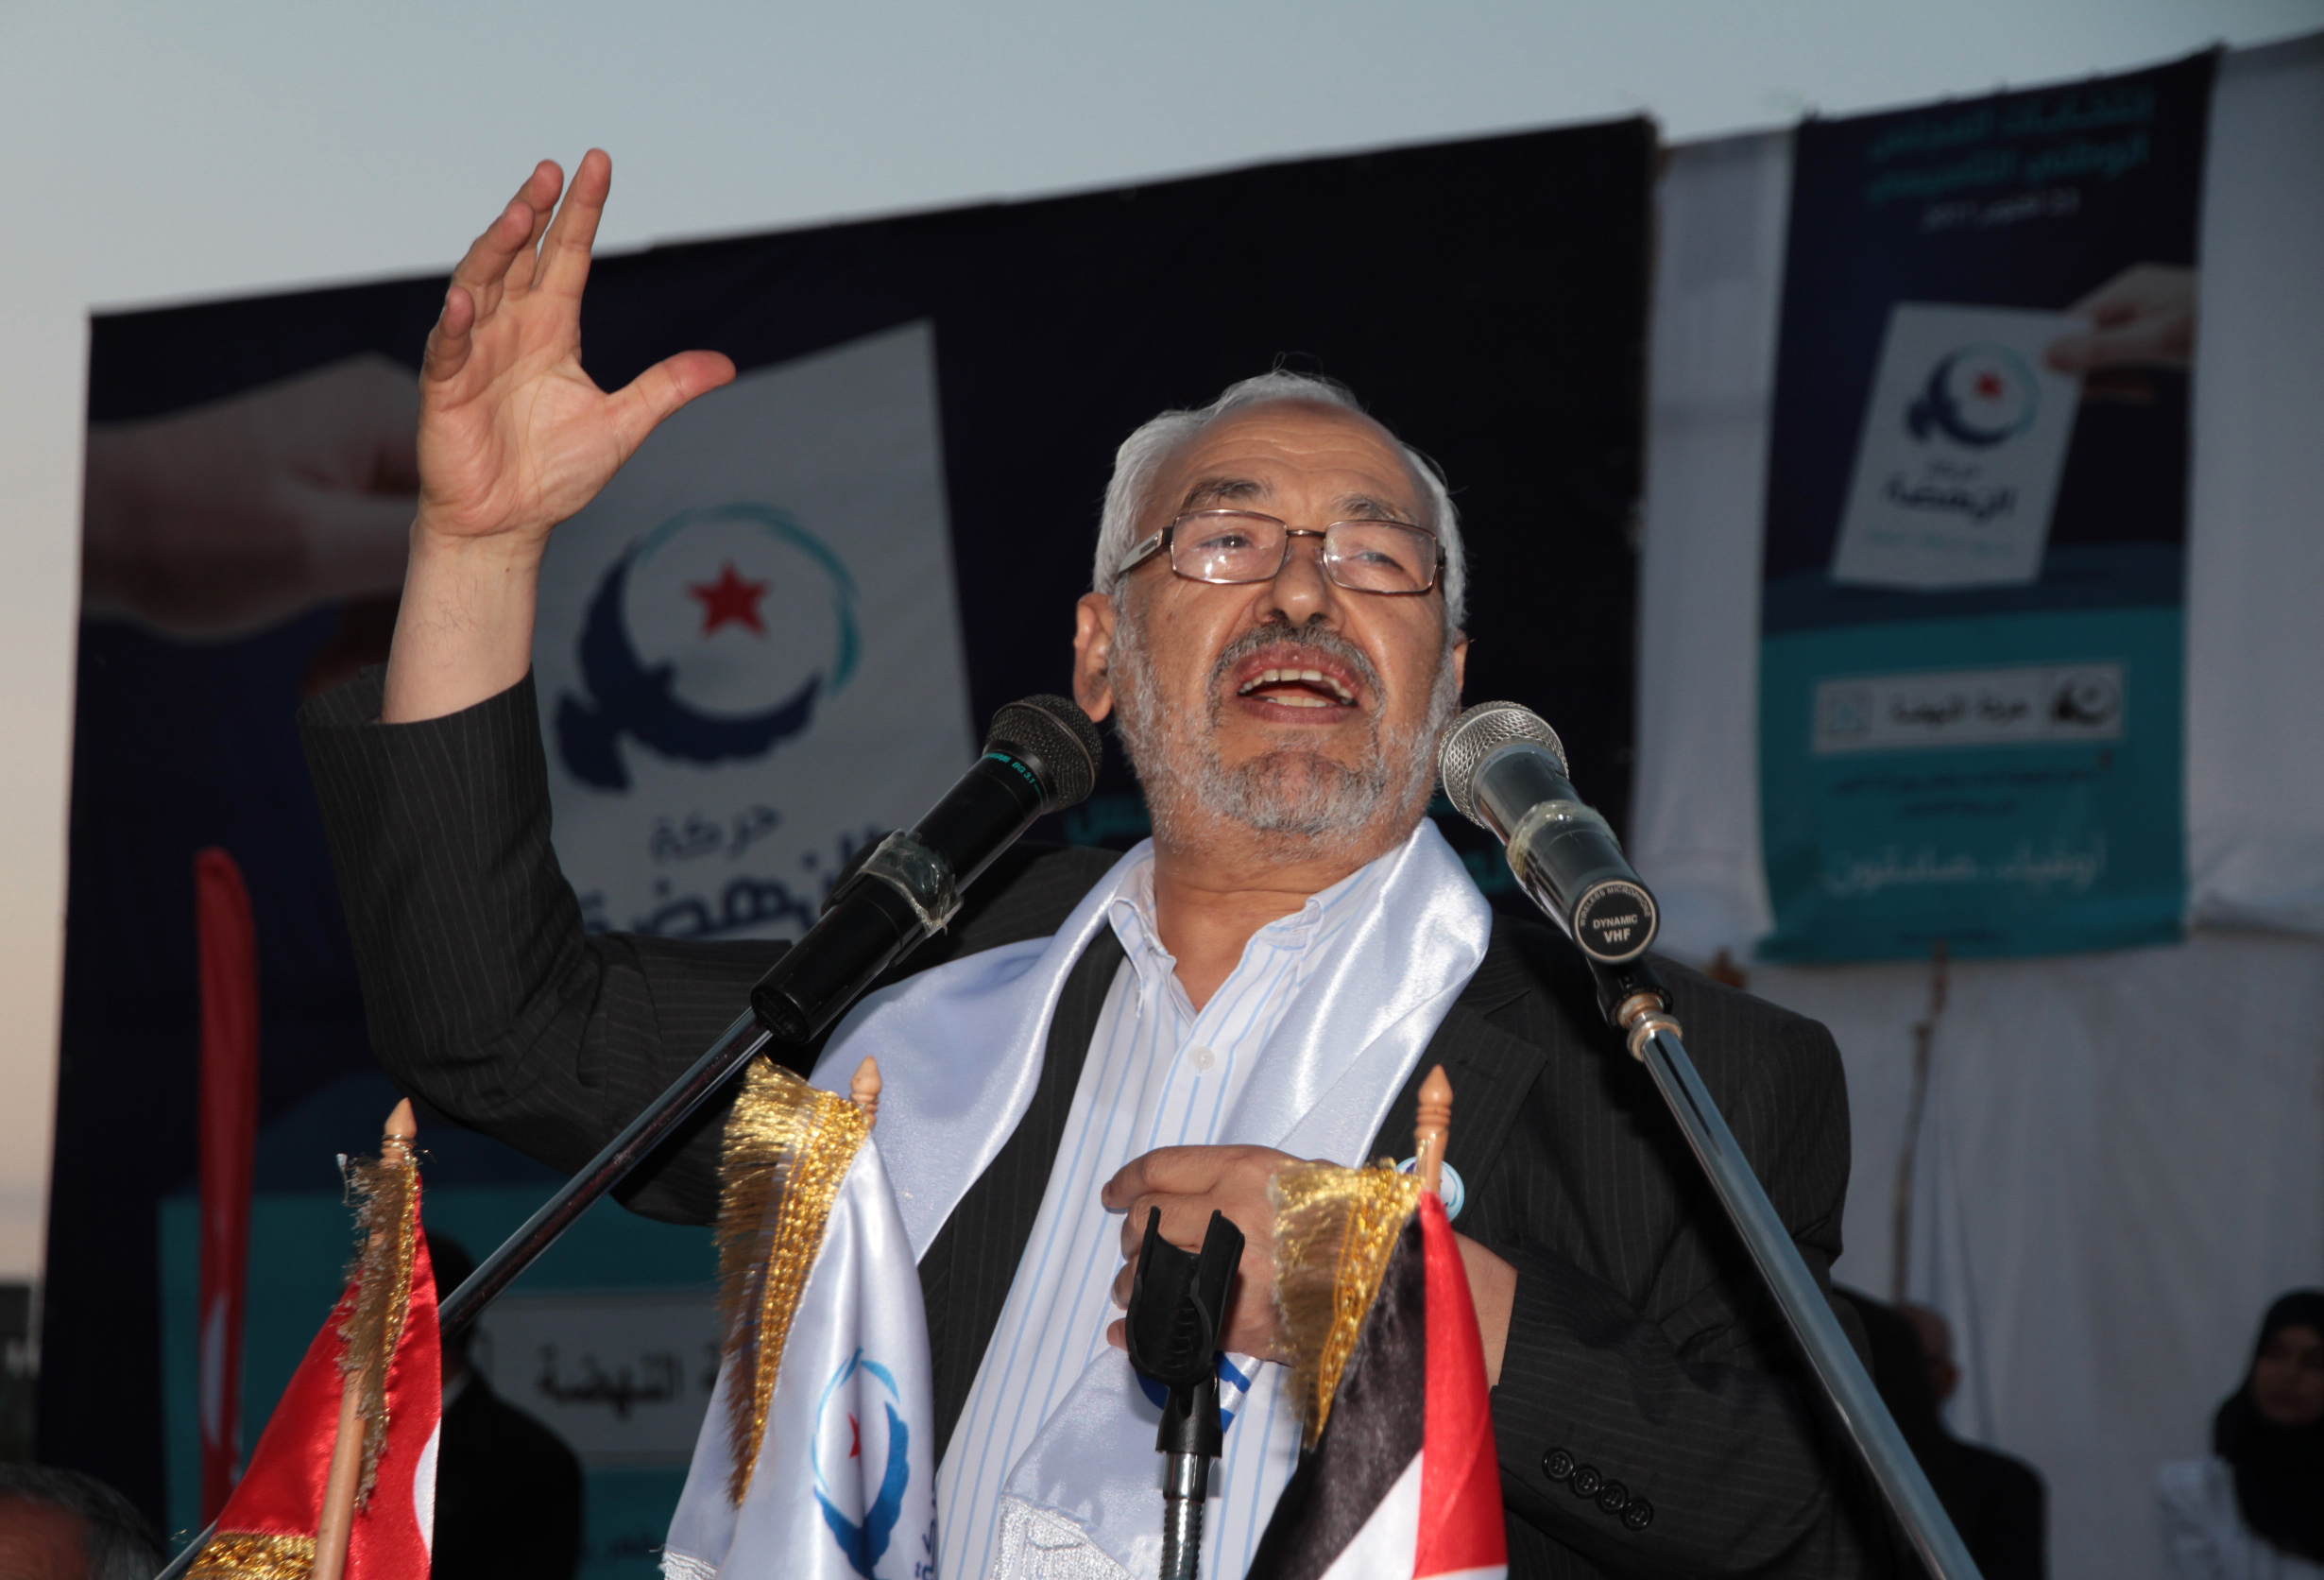 Det mesta tyder nu på att Rached Ghannouchi, ledare för Ennahda, blir Tunisiens nästa president.